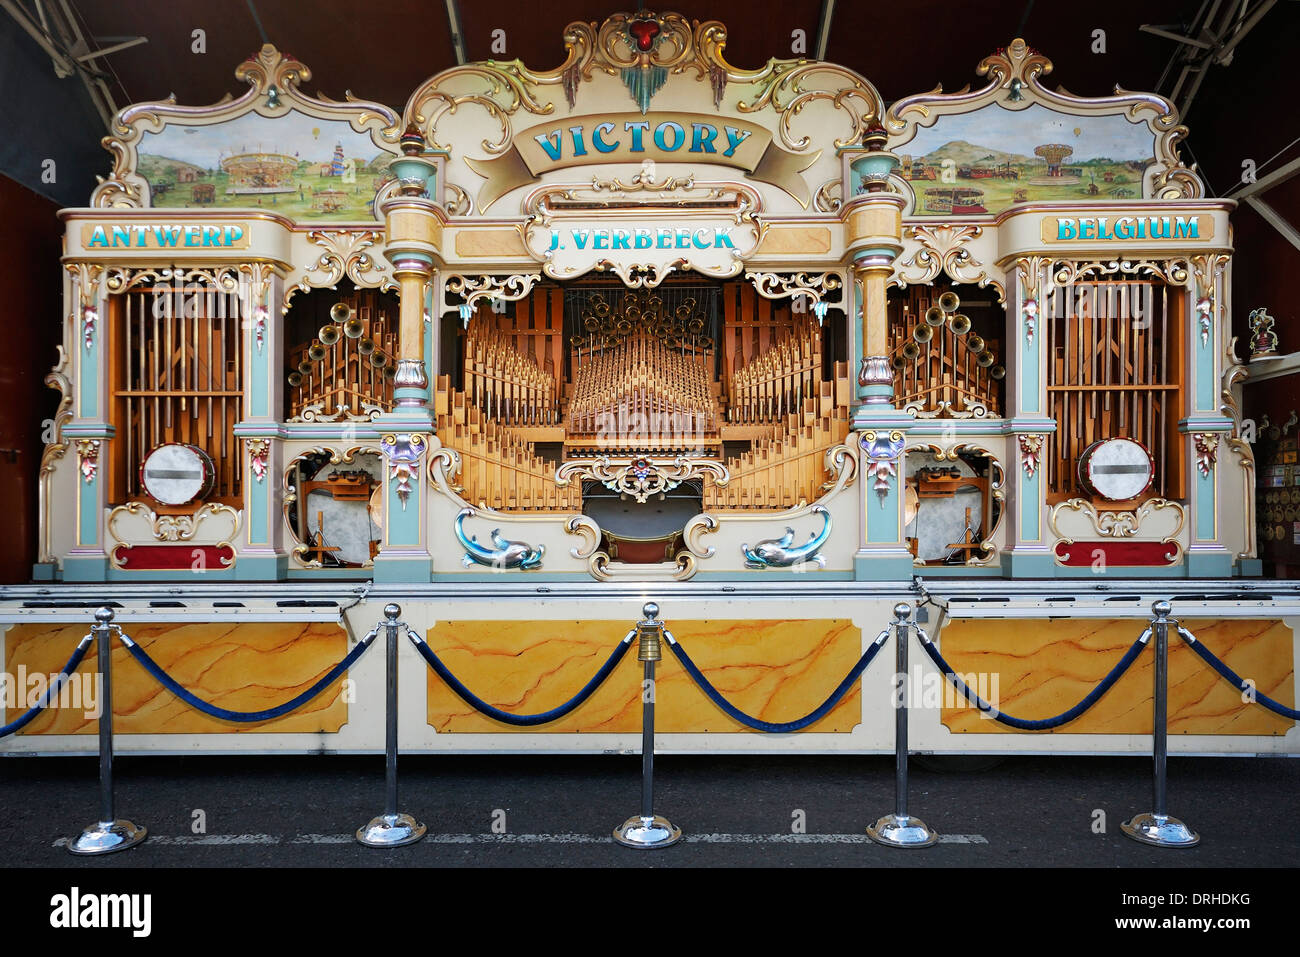 Victoire de foire orgue, J.Verbeeck, Anvers, Belgique Banque D'Images